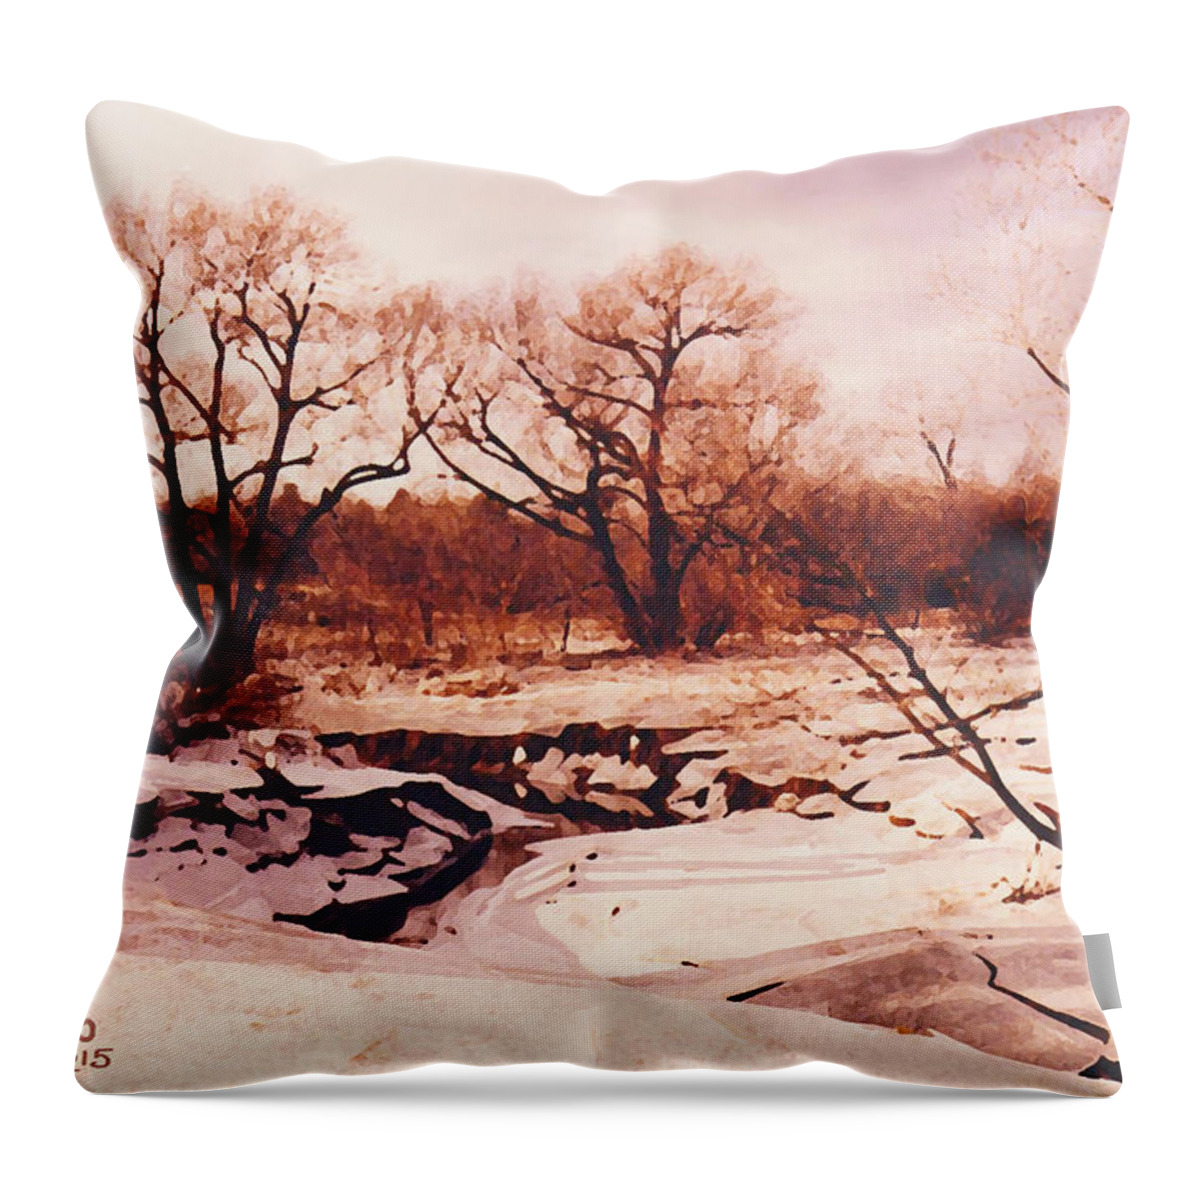 Frozen Creek Throw Pillow featuring the photograph Frozen Creek by Michael A Klein